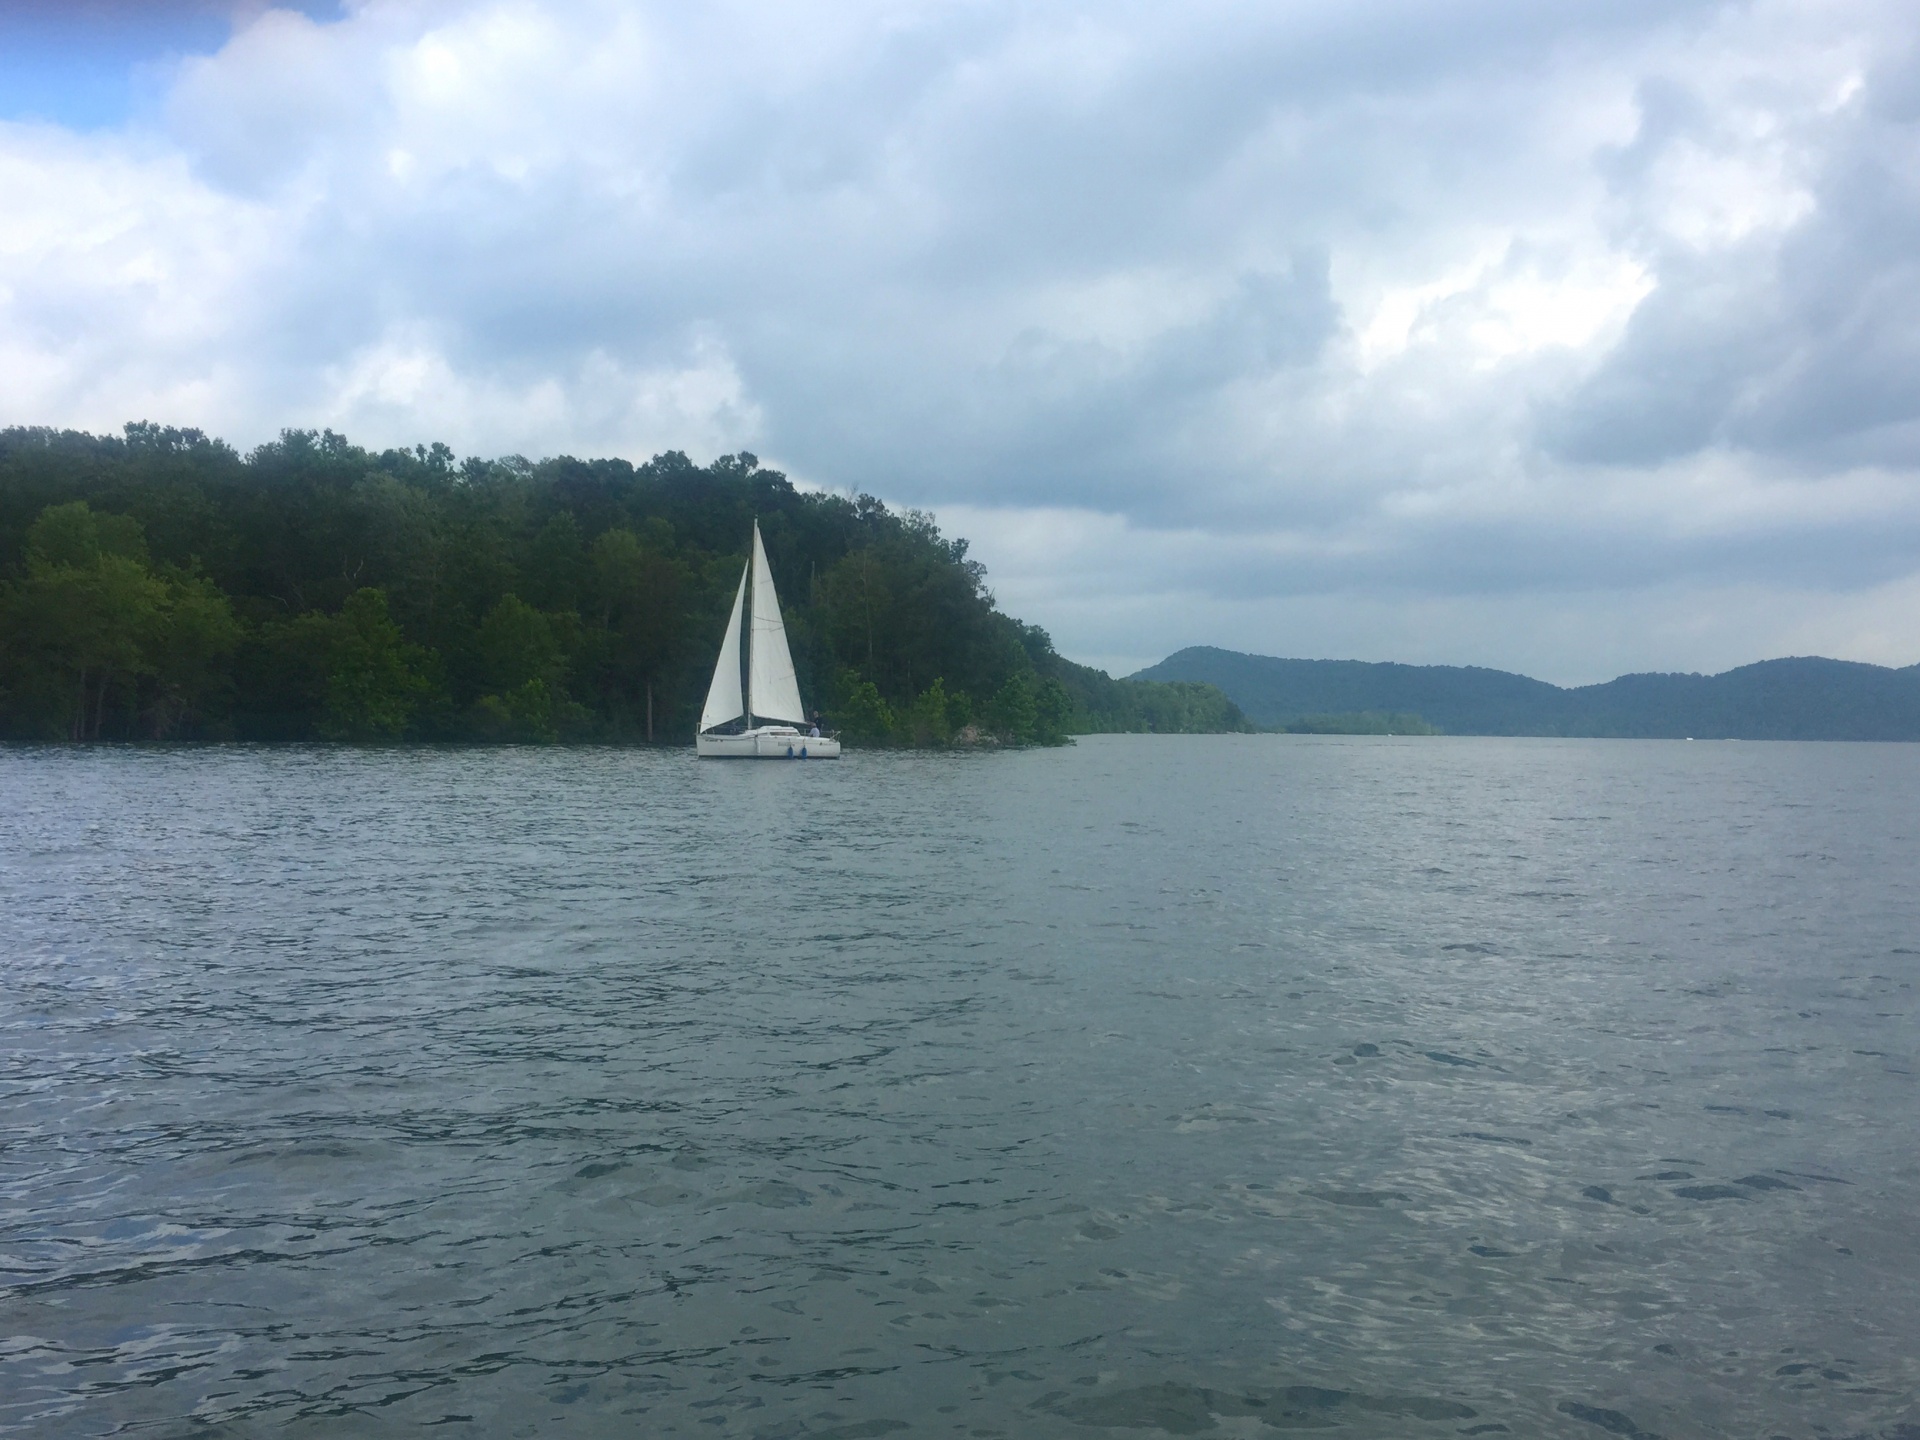 Lake Scene With Sailboat